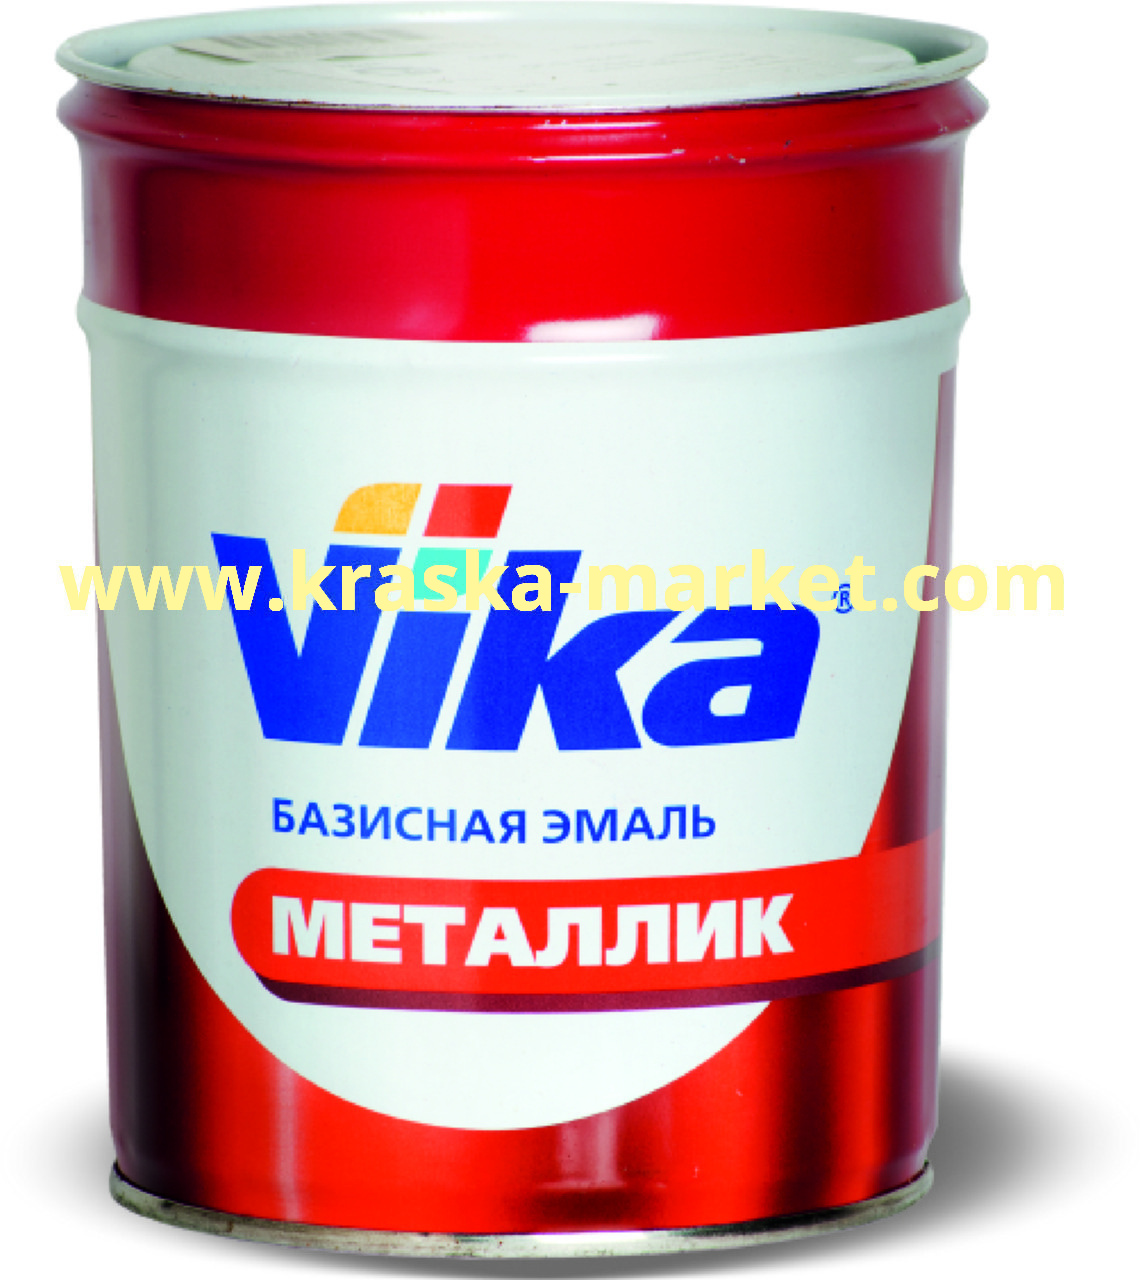 Базовая автоэмаль металлик, цвет: 366 лайм lada vesta. Упаковка: 0,9кг. Торговая марка: Вика.